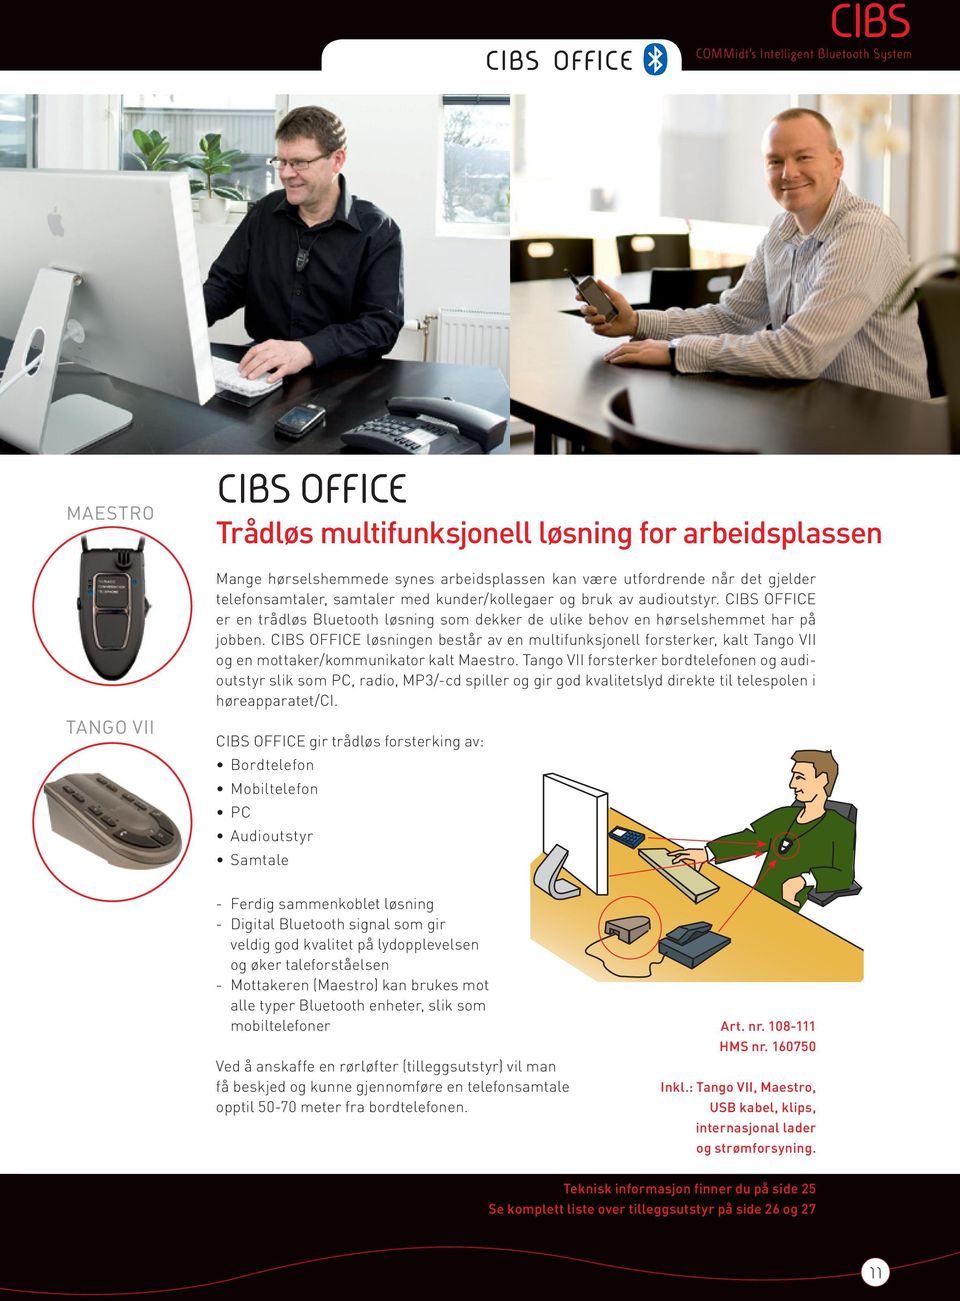 CIBS OFFICE løsningen består av en multifunksjonell forsterker, kalt Tango VII og en mottaker/kommunikator kalt Maestro.